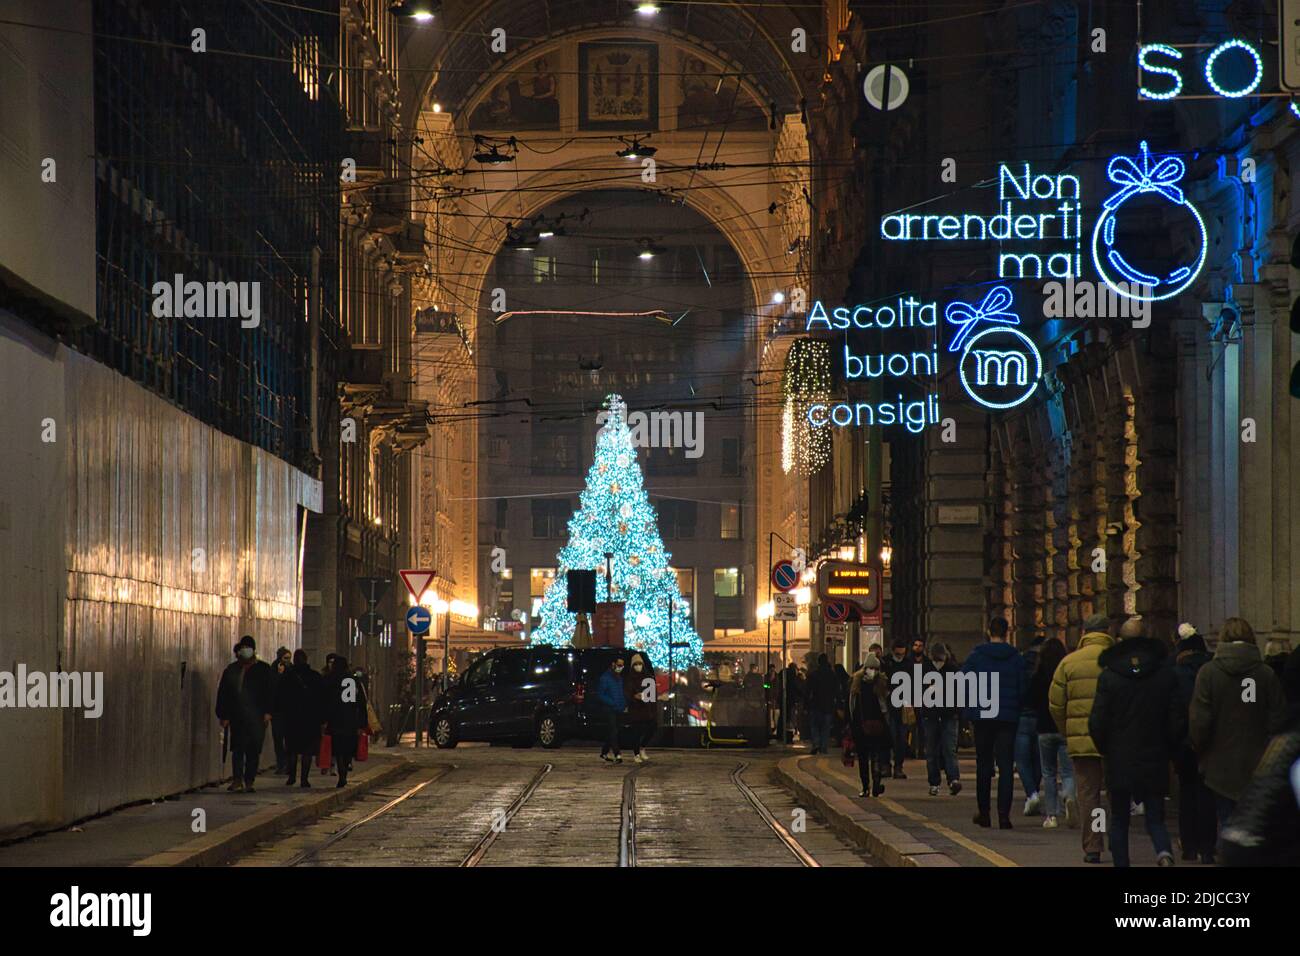 Milan, Italie 12.12.2020, arbre de Noël Swarovski coloré, brillant et décoratif dans la galerie Vittorio Emanuele II Banque D'Images